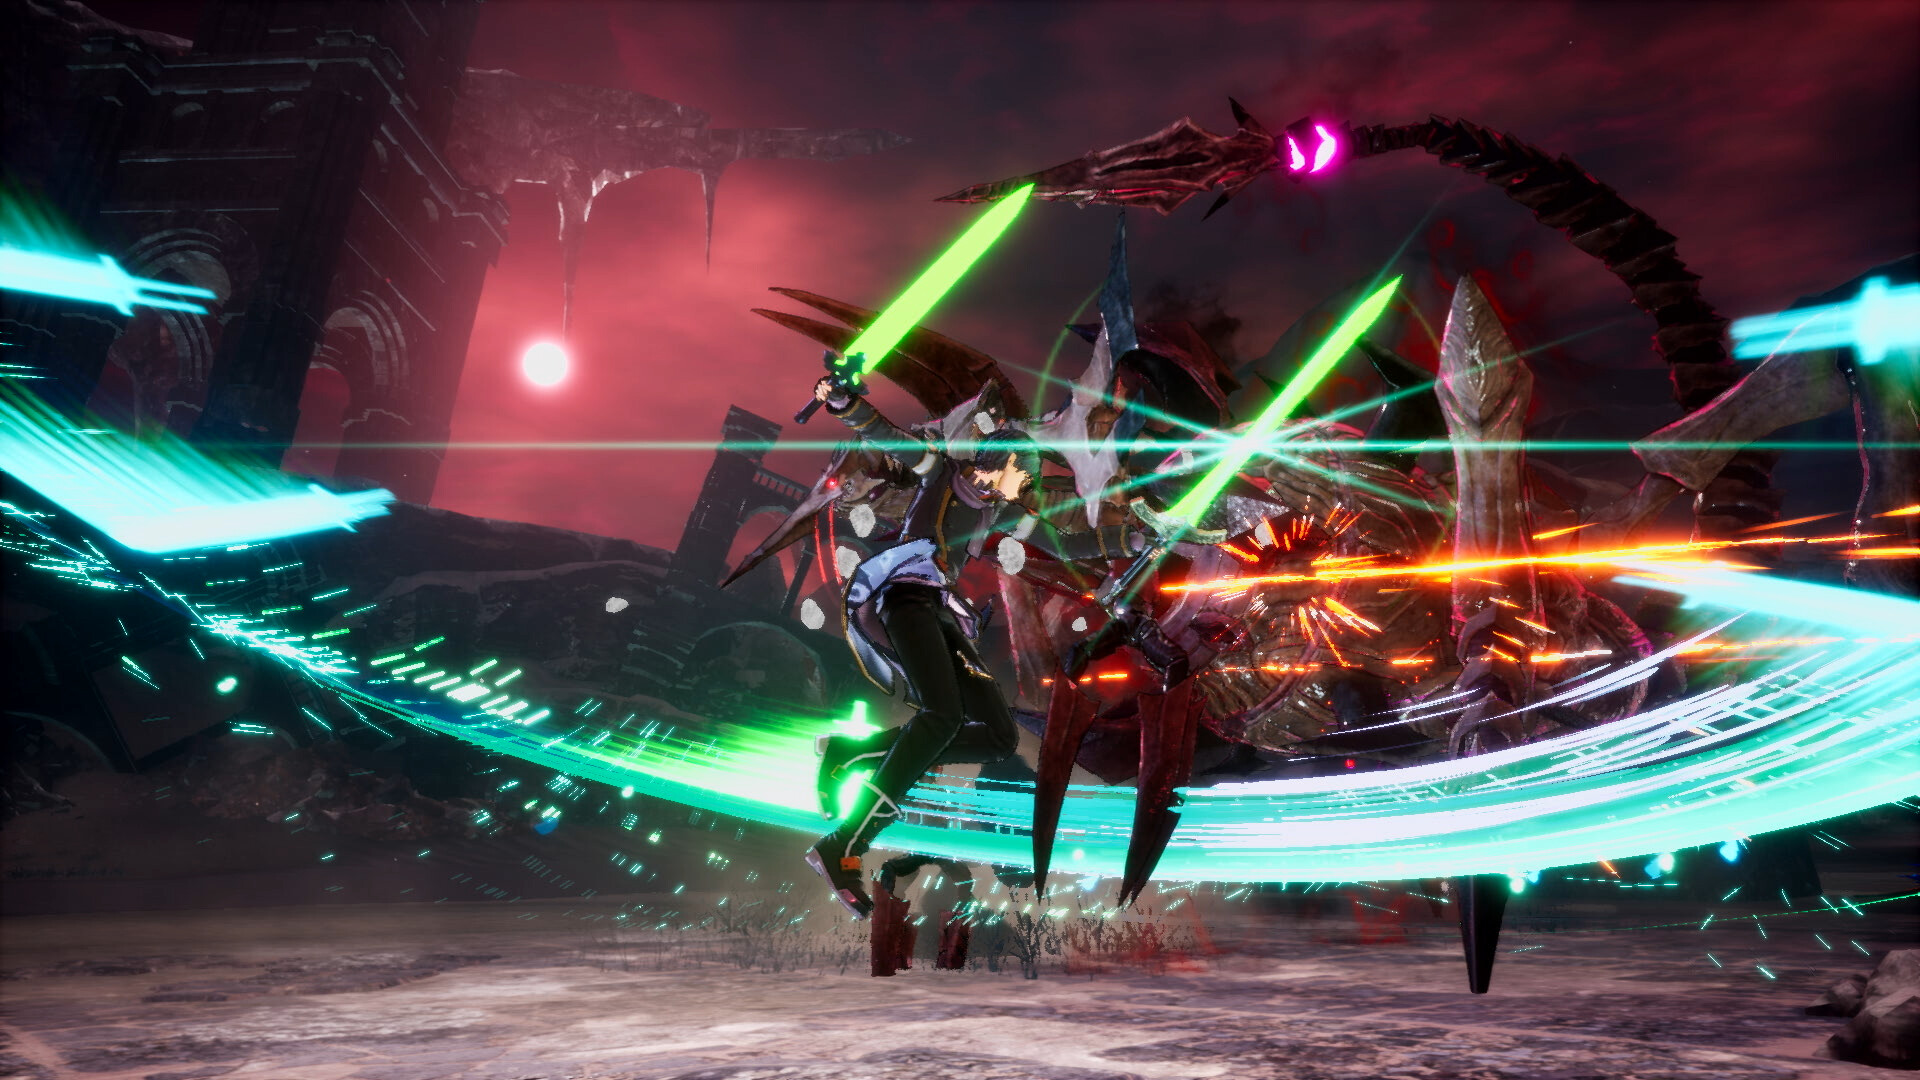 Sword Art Online Last Recollection abre pré-venda